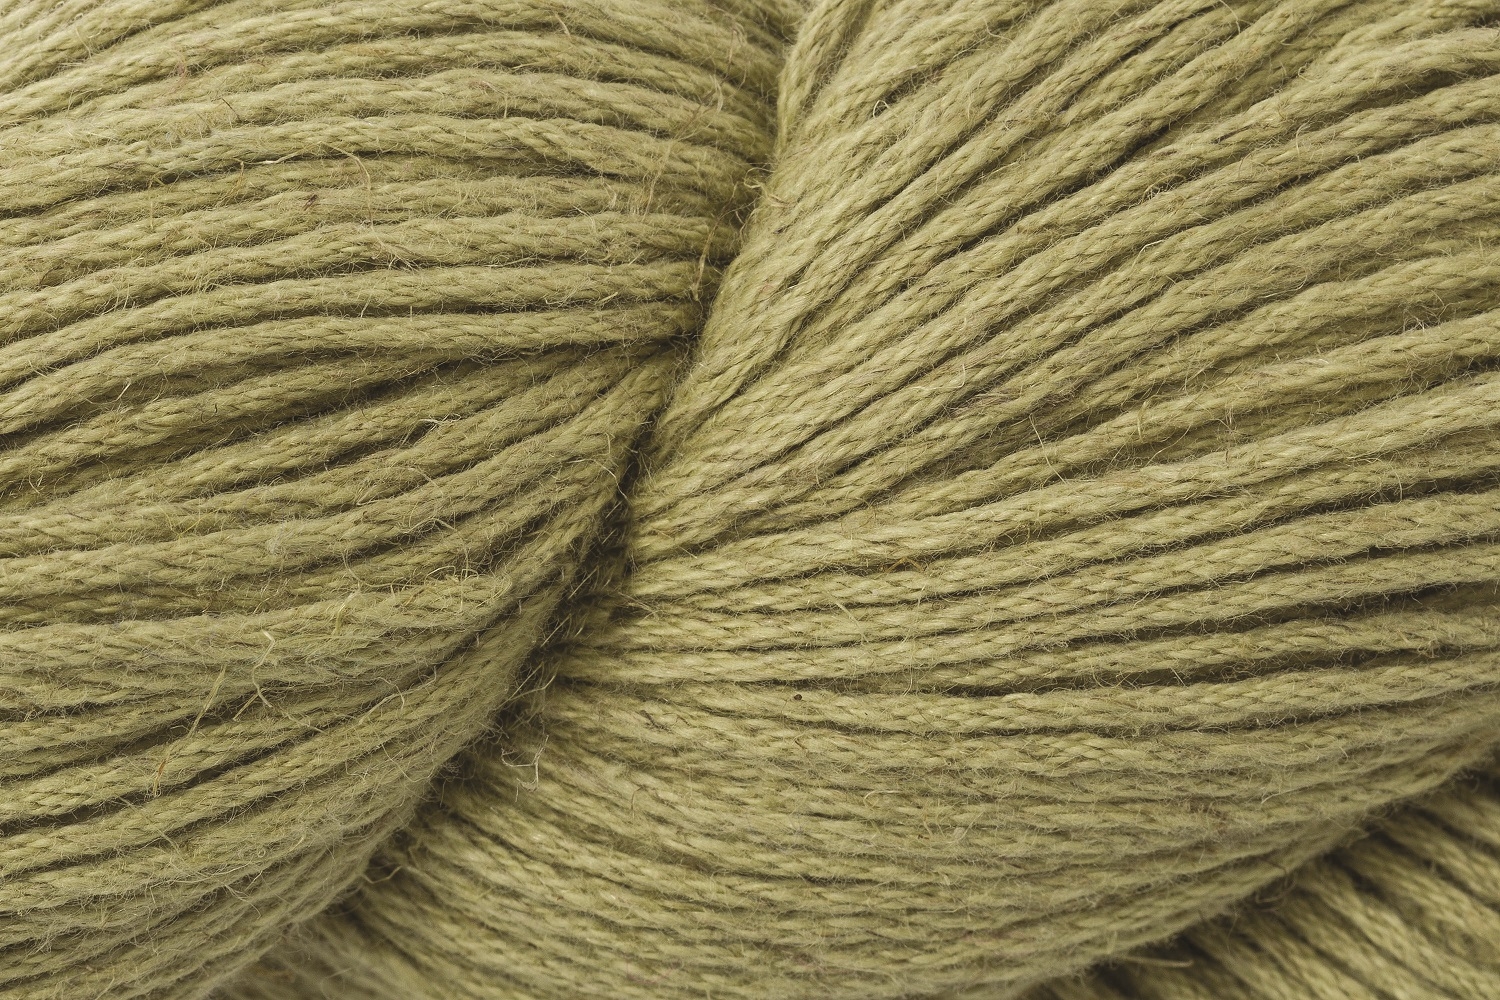 ROWAN Creative Linen shade 622  50% linen 50% cotton 100g skein Knitting Yarn